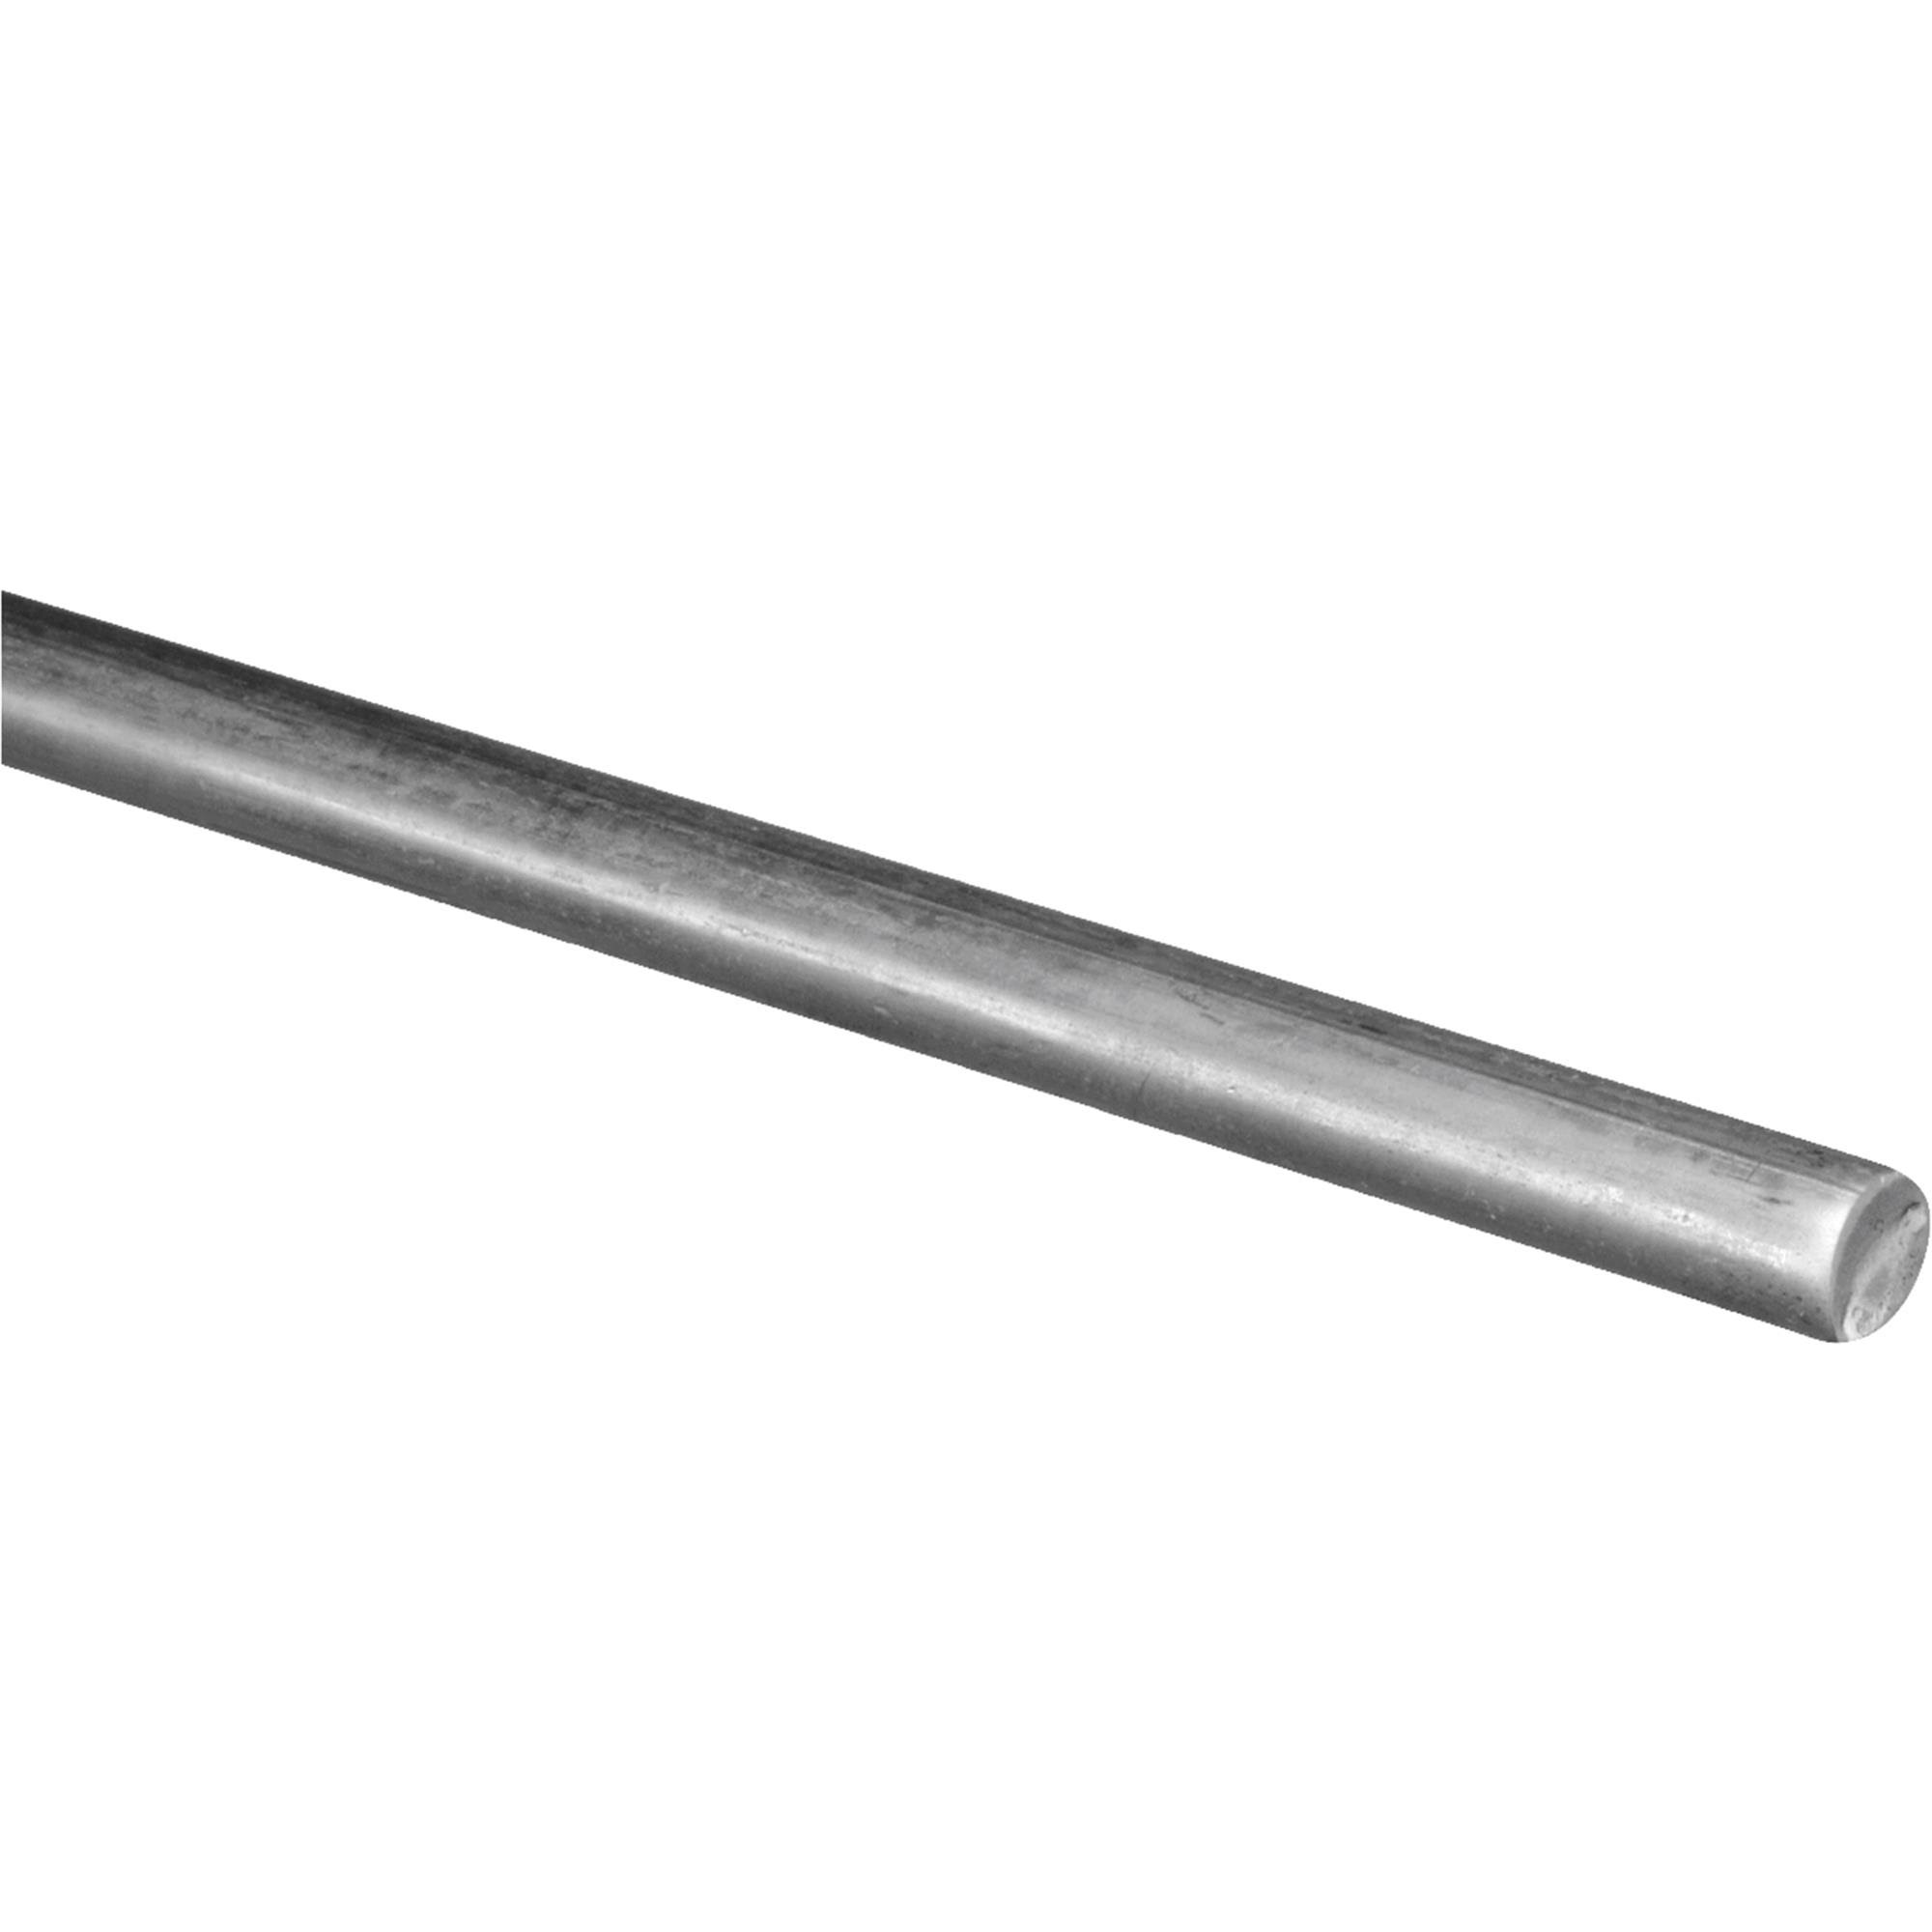 5/16"x36" Round Steel Rod